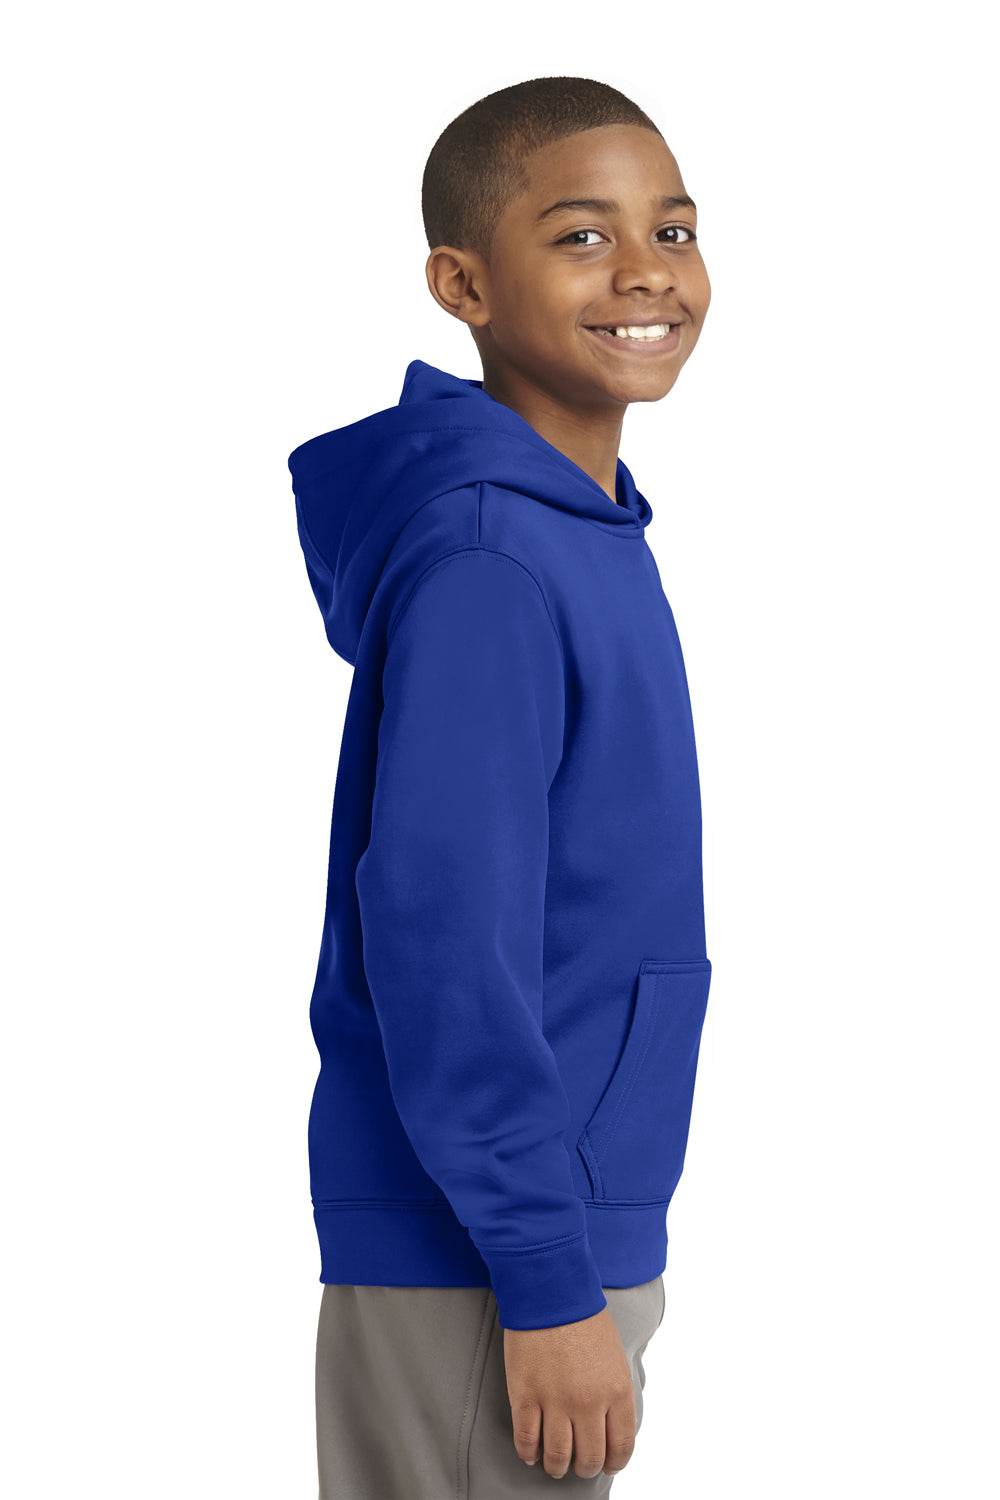 Sport-Tek YST244 Youth Sport-Wick Moisture Wicking Fleece Hooded Sweatshirt Hoodie Royal Blue Side